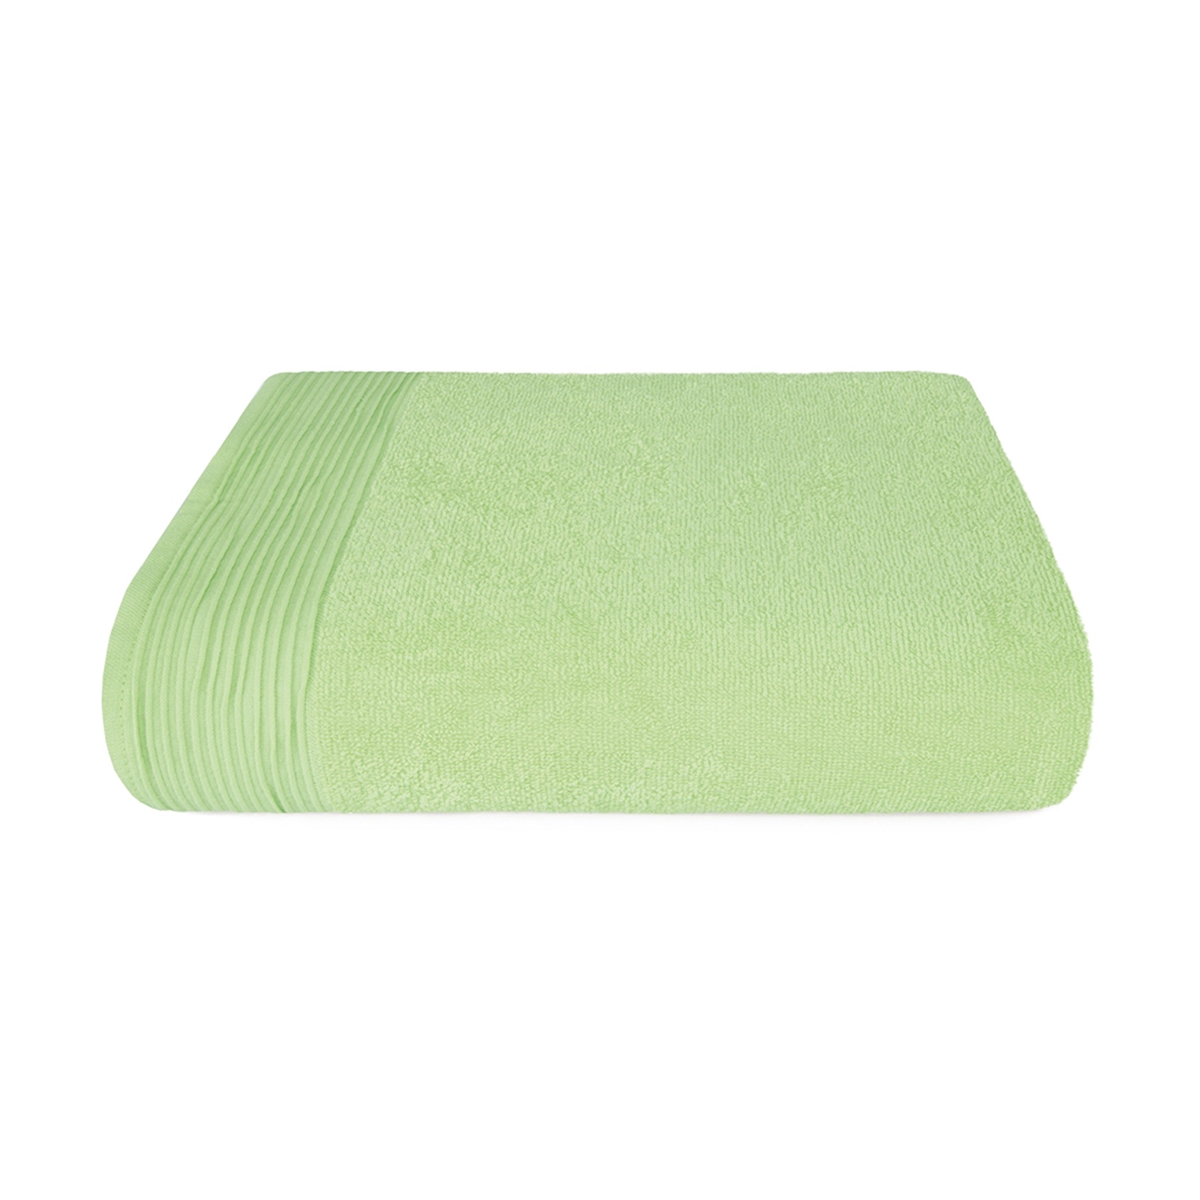 Полотенце "самойловский текстиль" палитра 33*60 см (светло-зеленый)